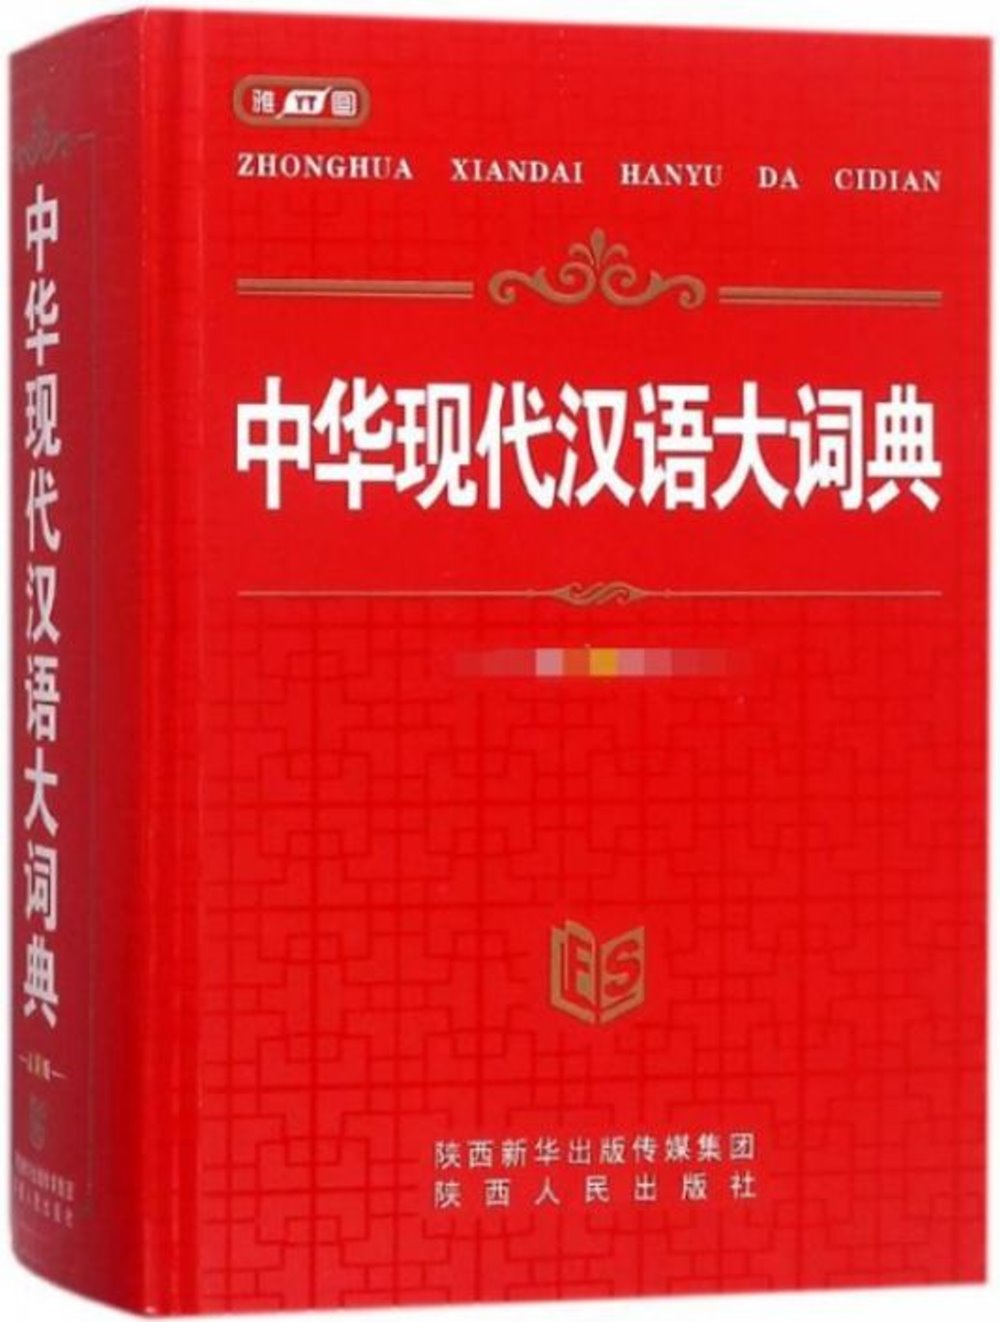 中華現代漢語大詞典